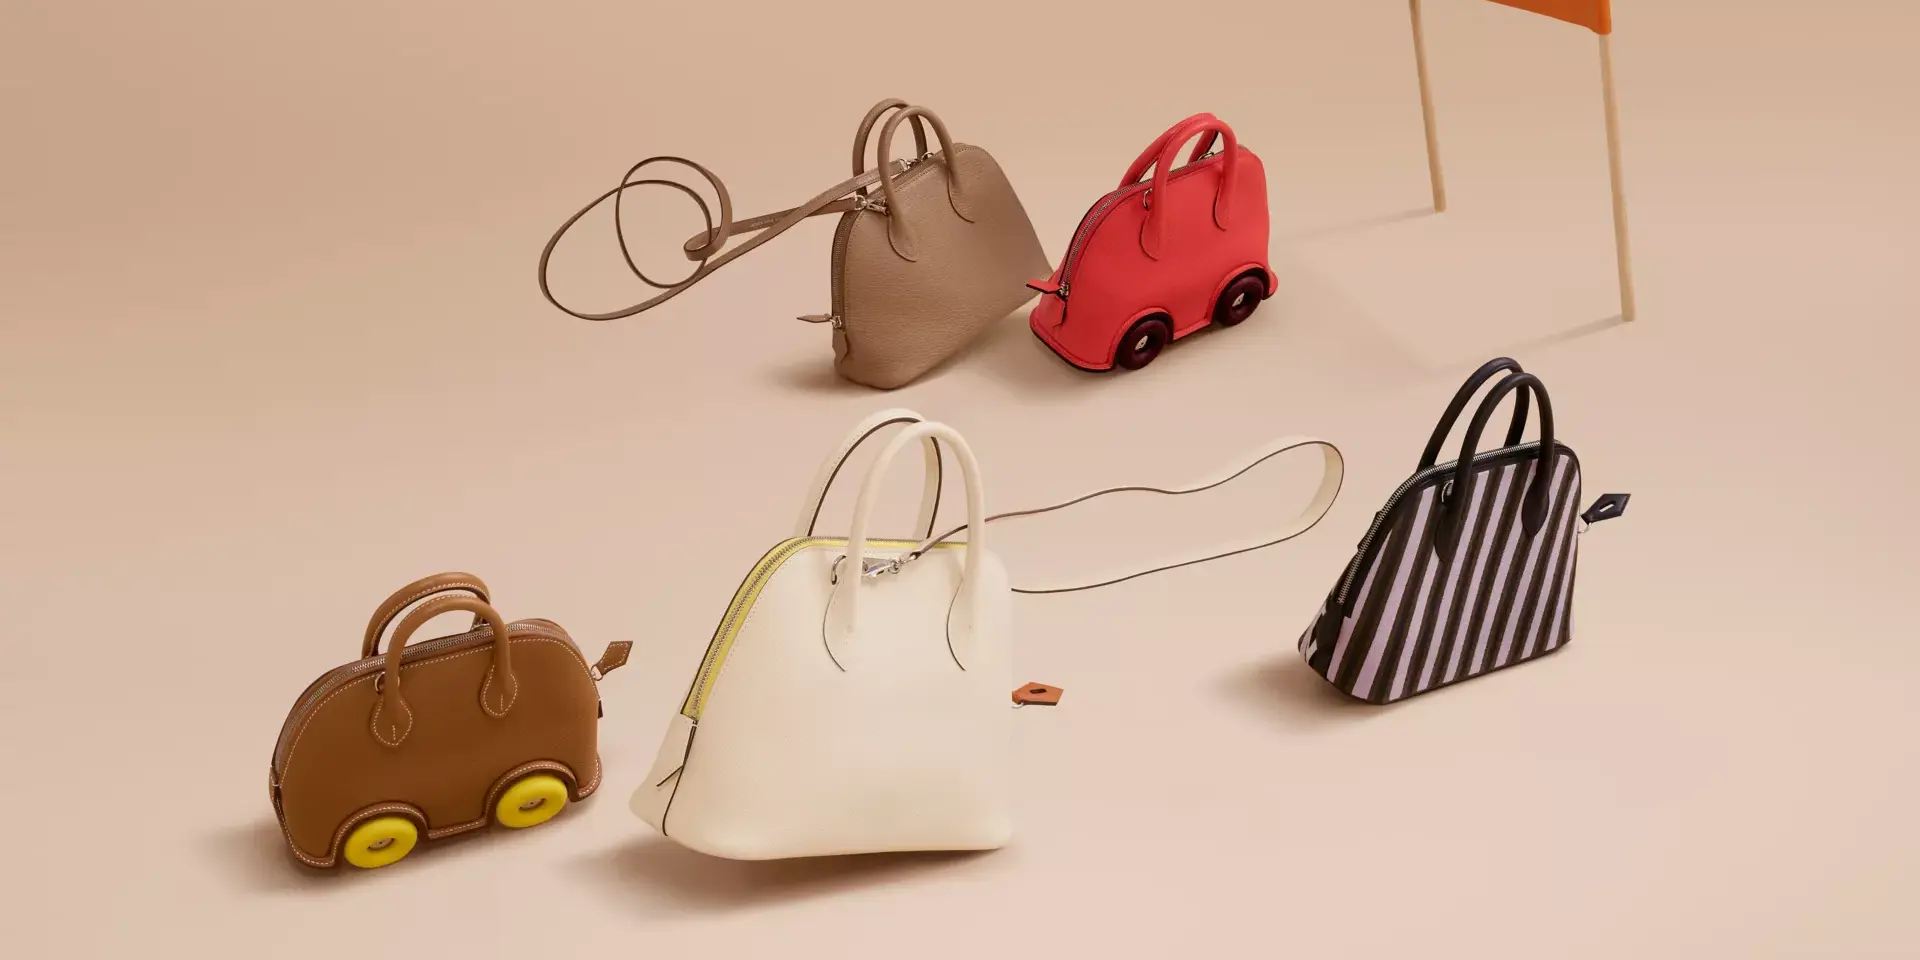 Об этих самых редких сумках Hermès вы, возможно, даже не слышали